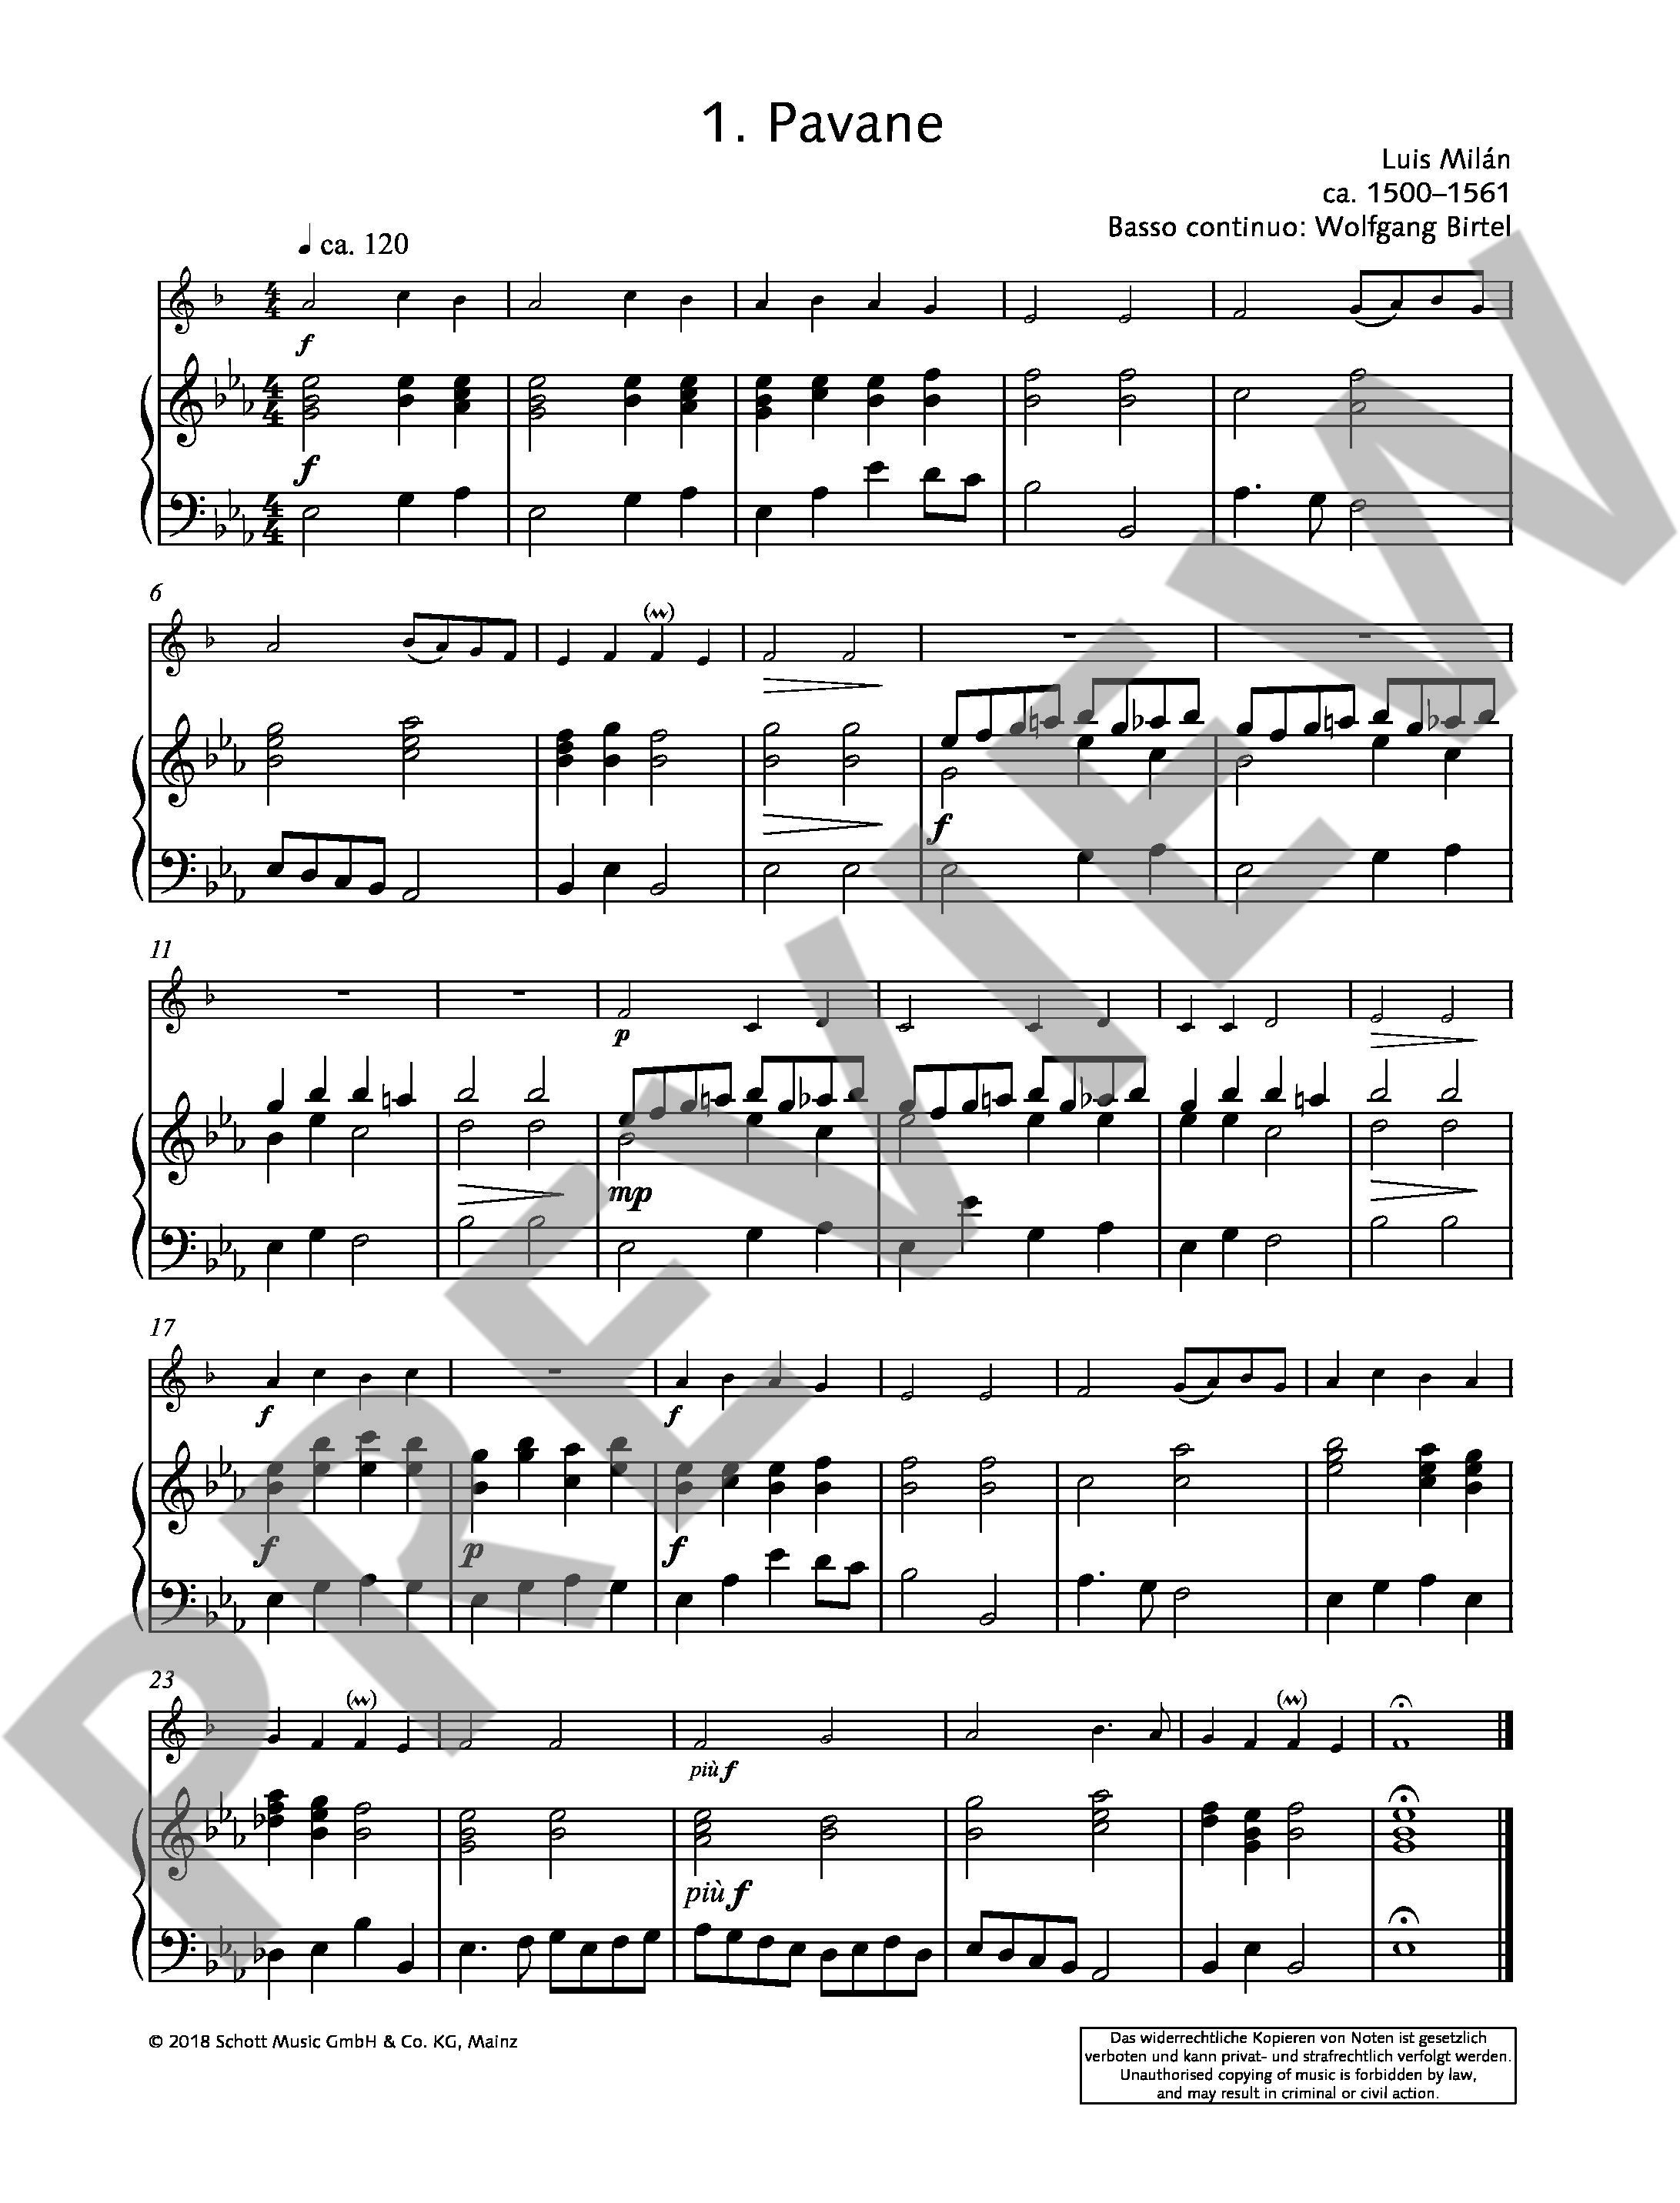 Easy Concert Pieces 1 + CD - 16 klasických skladeb pro trumpetu a klavír